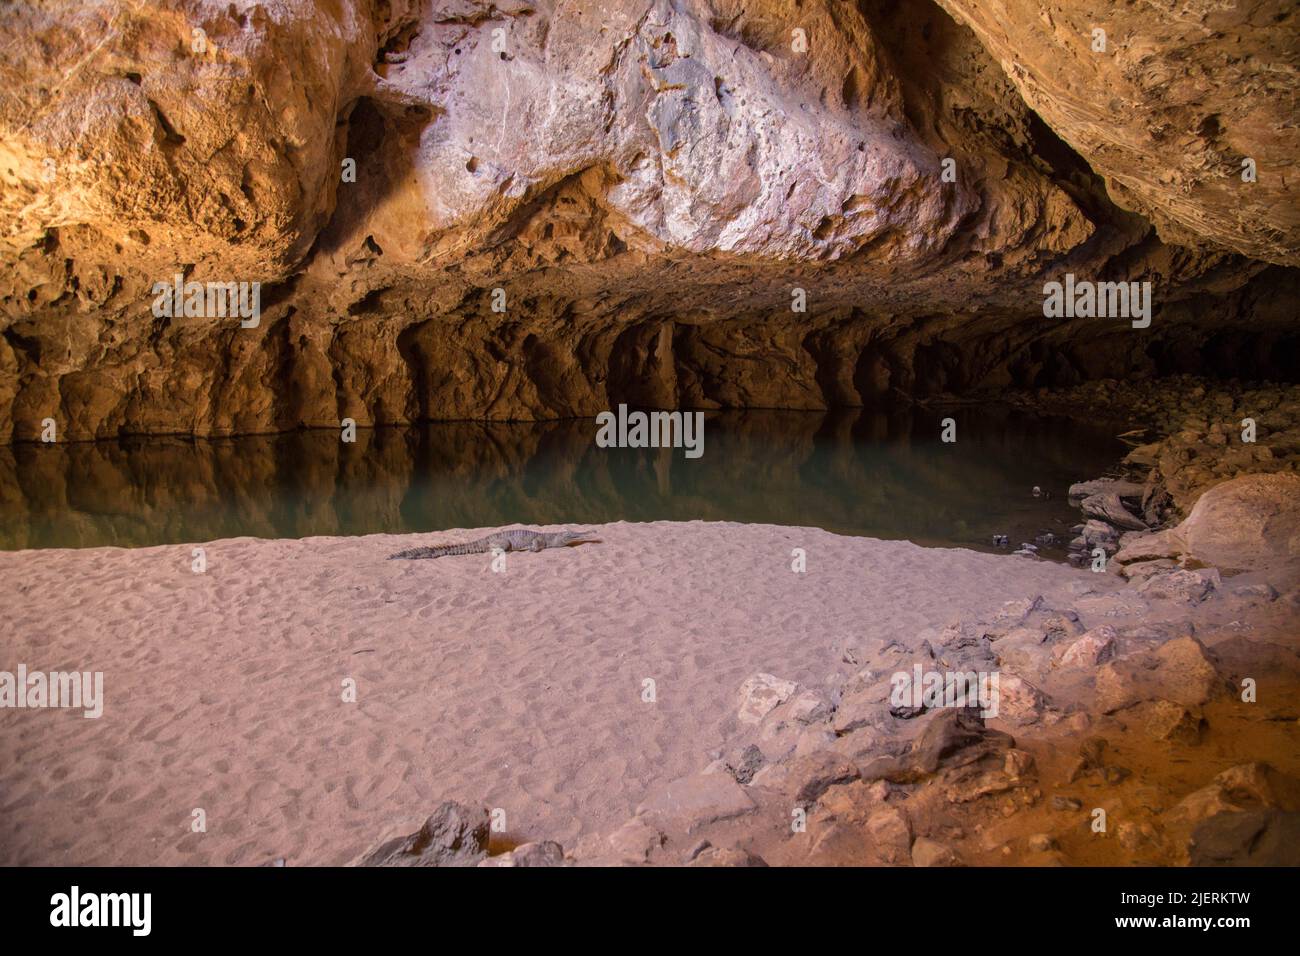 Crocodile d'eau douce dans une grotte en Australie Banque D'Images